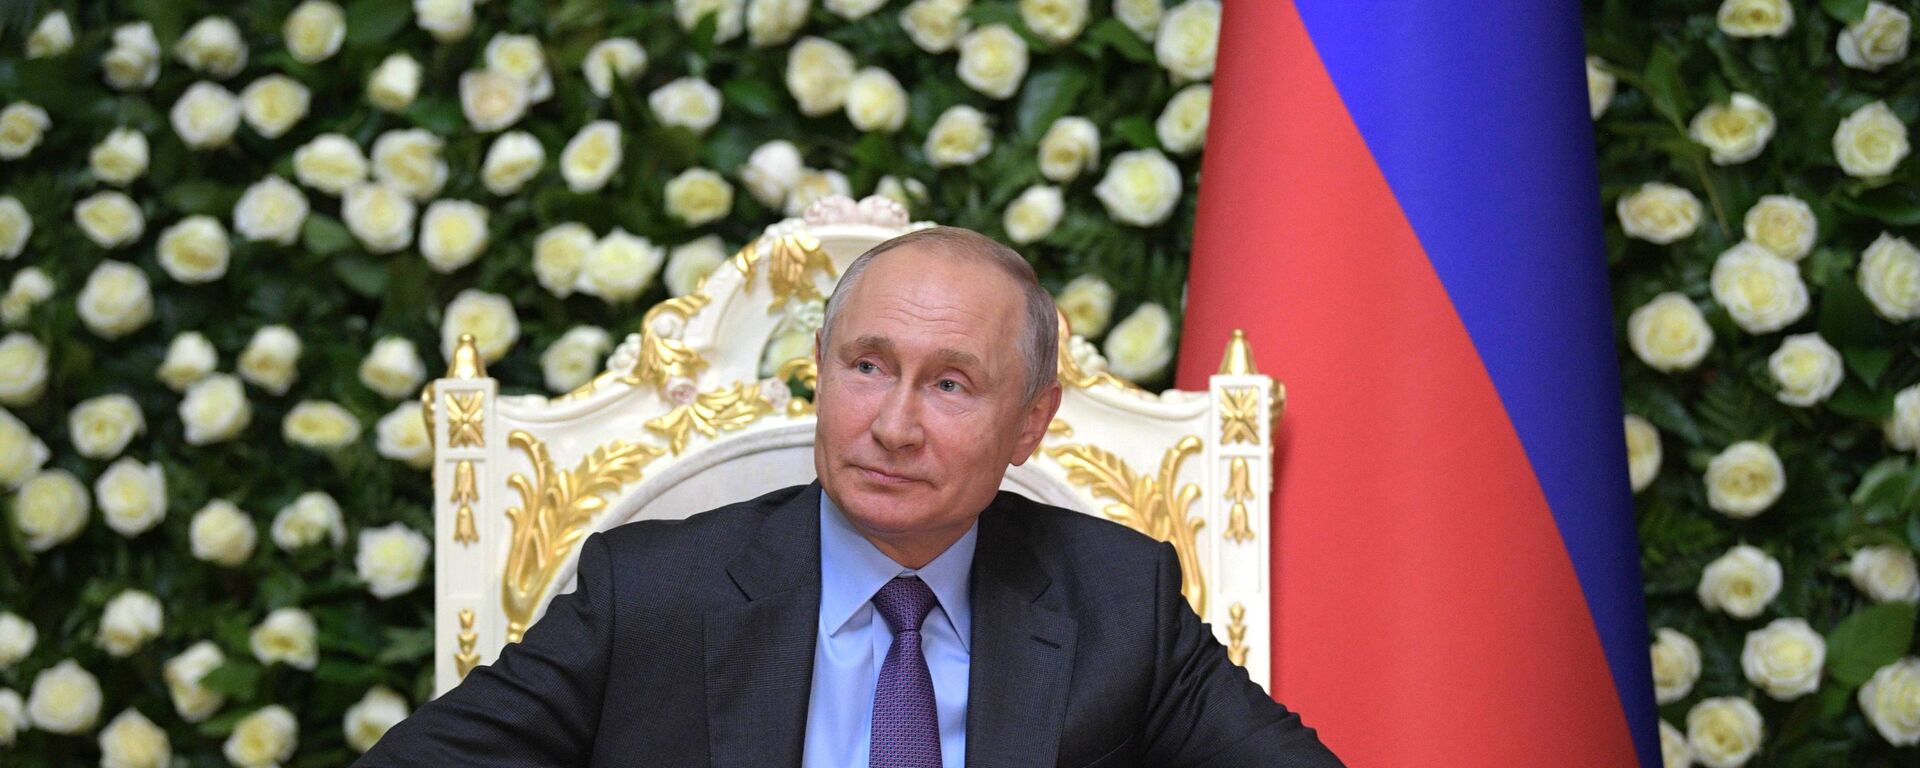 Президент РФ В. Путин прибыл в Душанбе для участия в саммите СВМДА - Sputnik Таджикистан, 1920, 14.09.2021